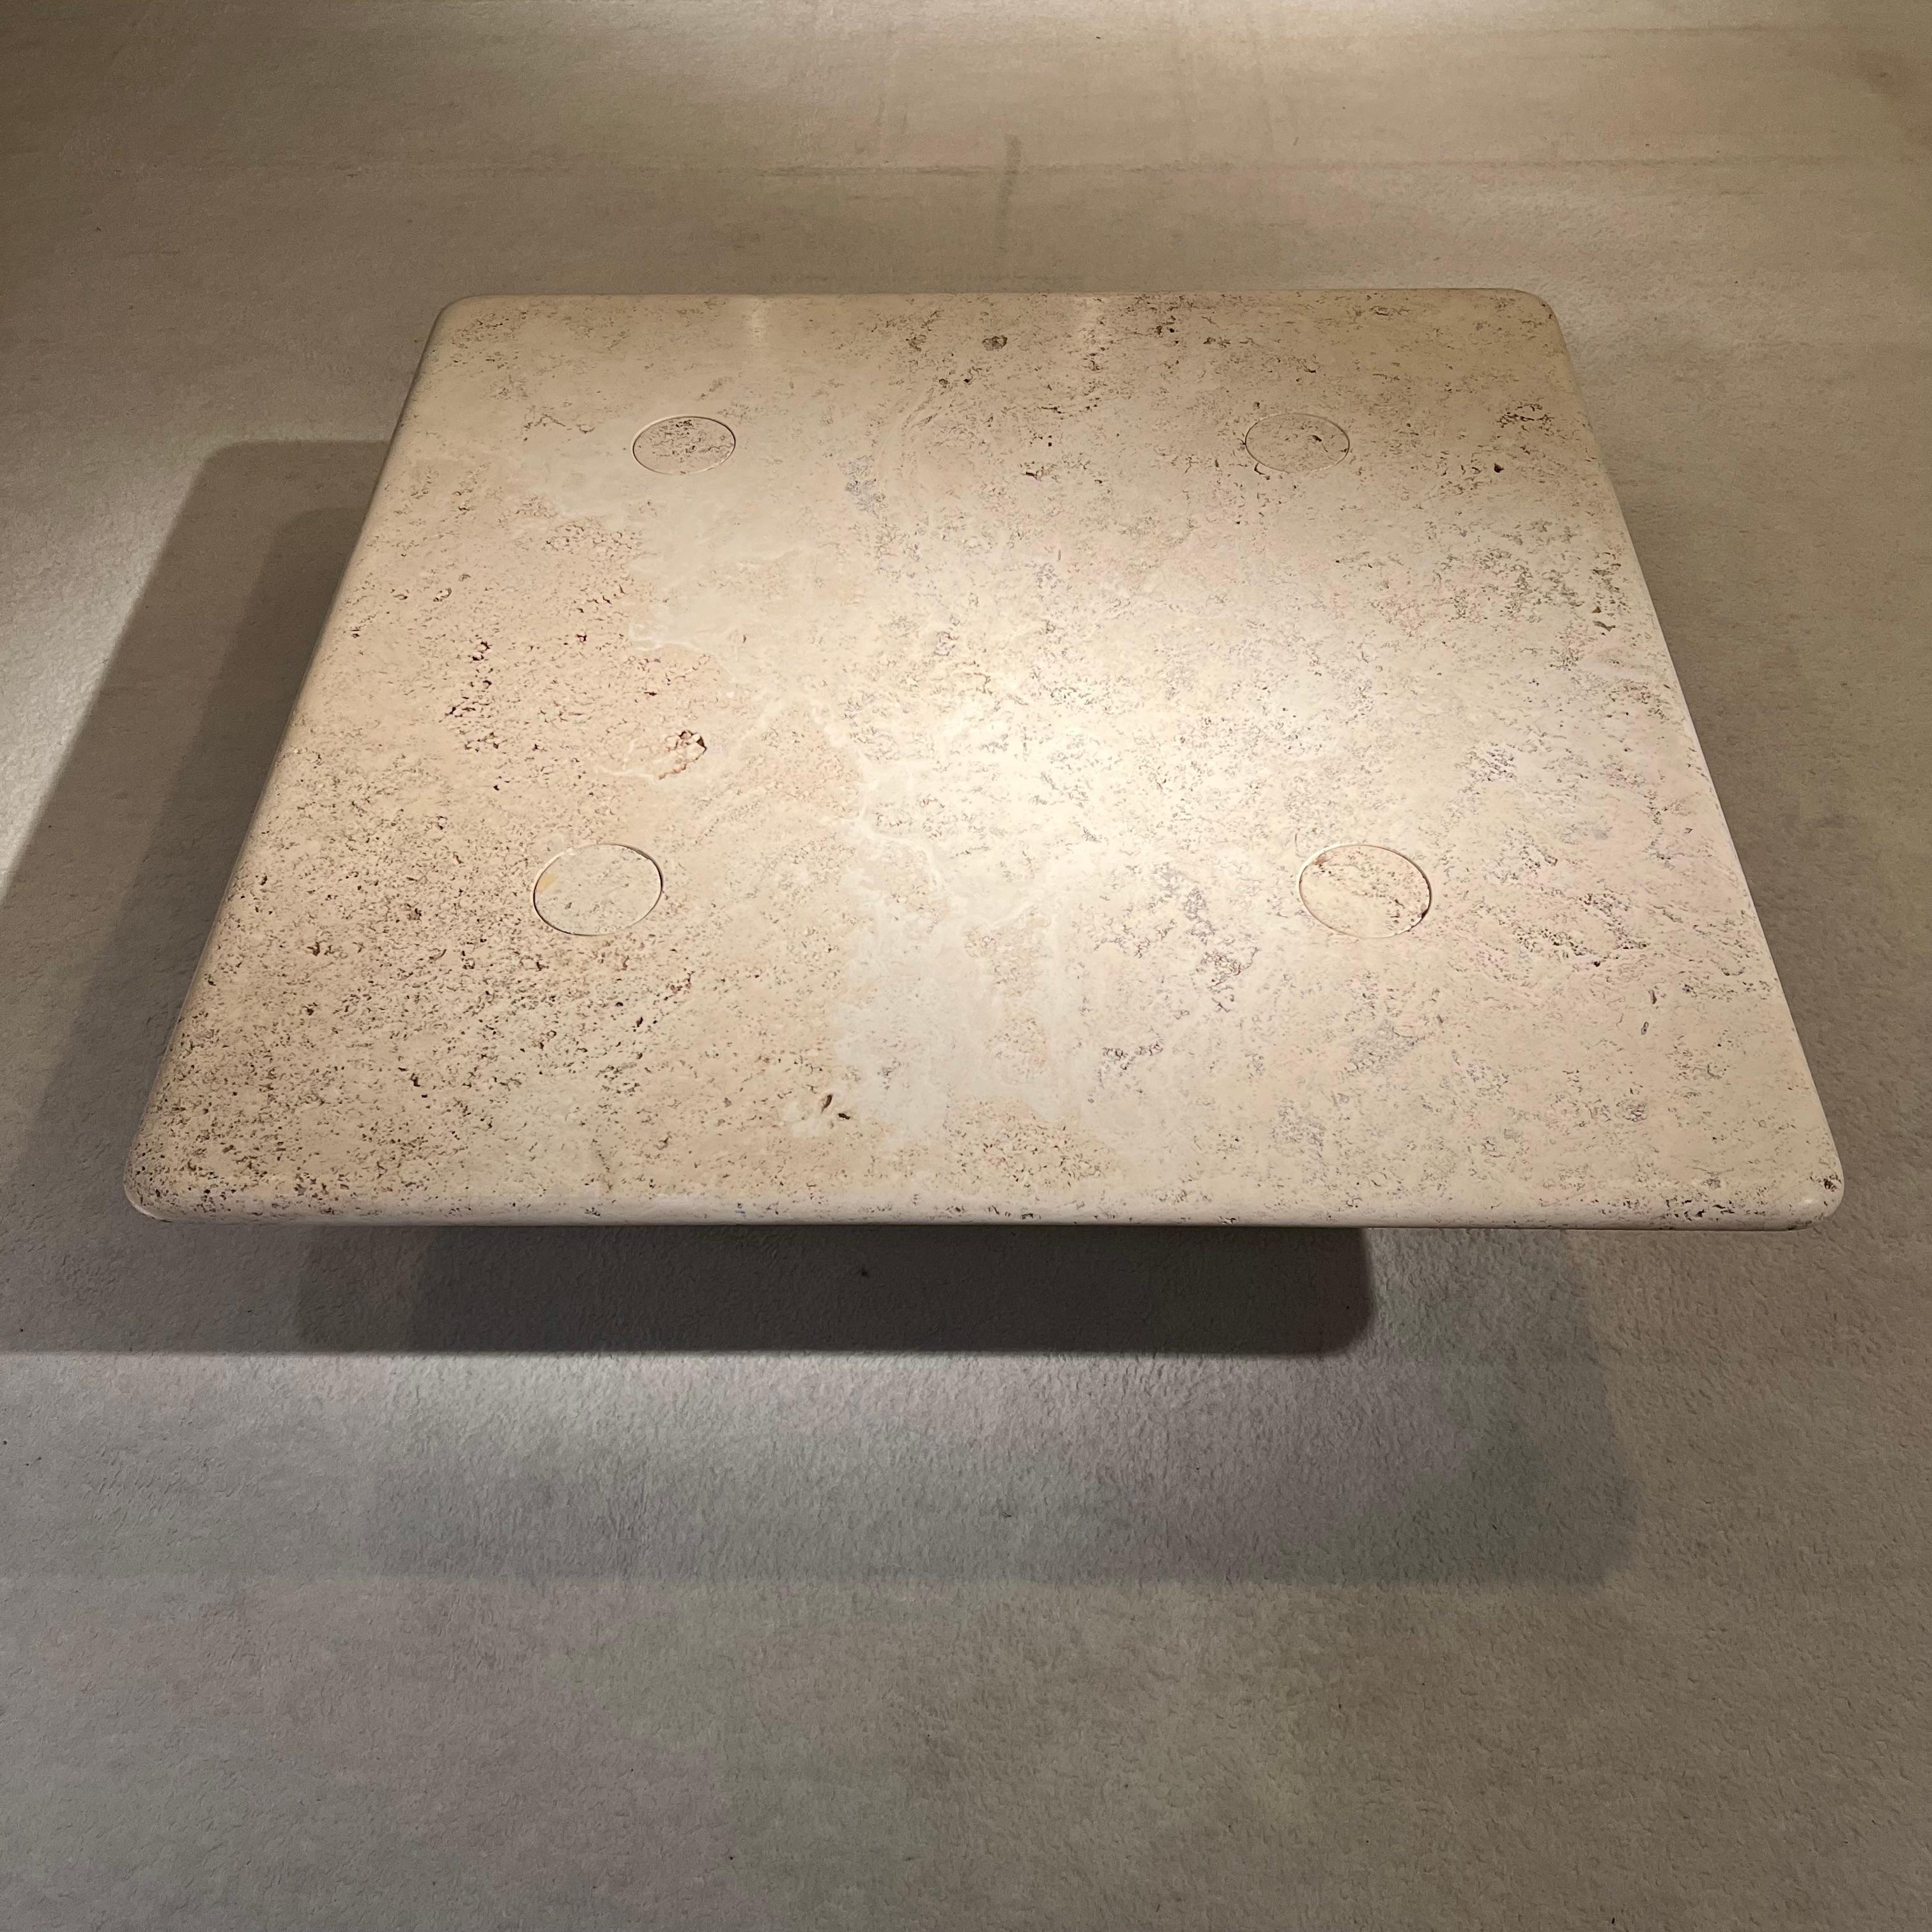 Dieser prächtige Tisch aus Travertin ist das Werk von Angelo Mangiarotti, einem italienischen Designer der 1970er Jahre.
Die herrliche Patina, die schlanke Form und die idealen Maße machen den Tisch zu einem sanft-schicken Dekorationsobjekt. 
Ein